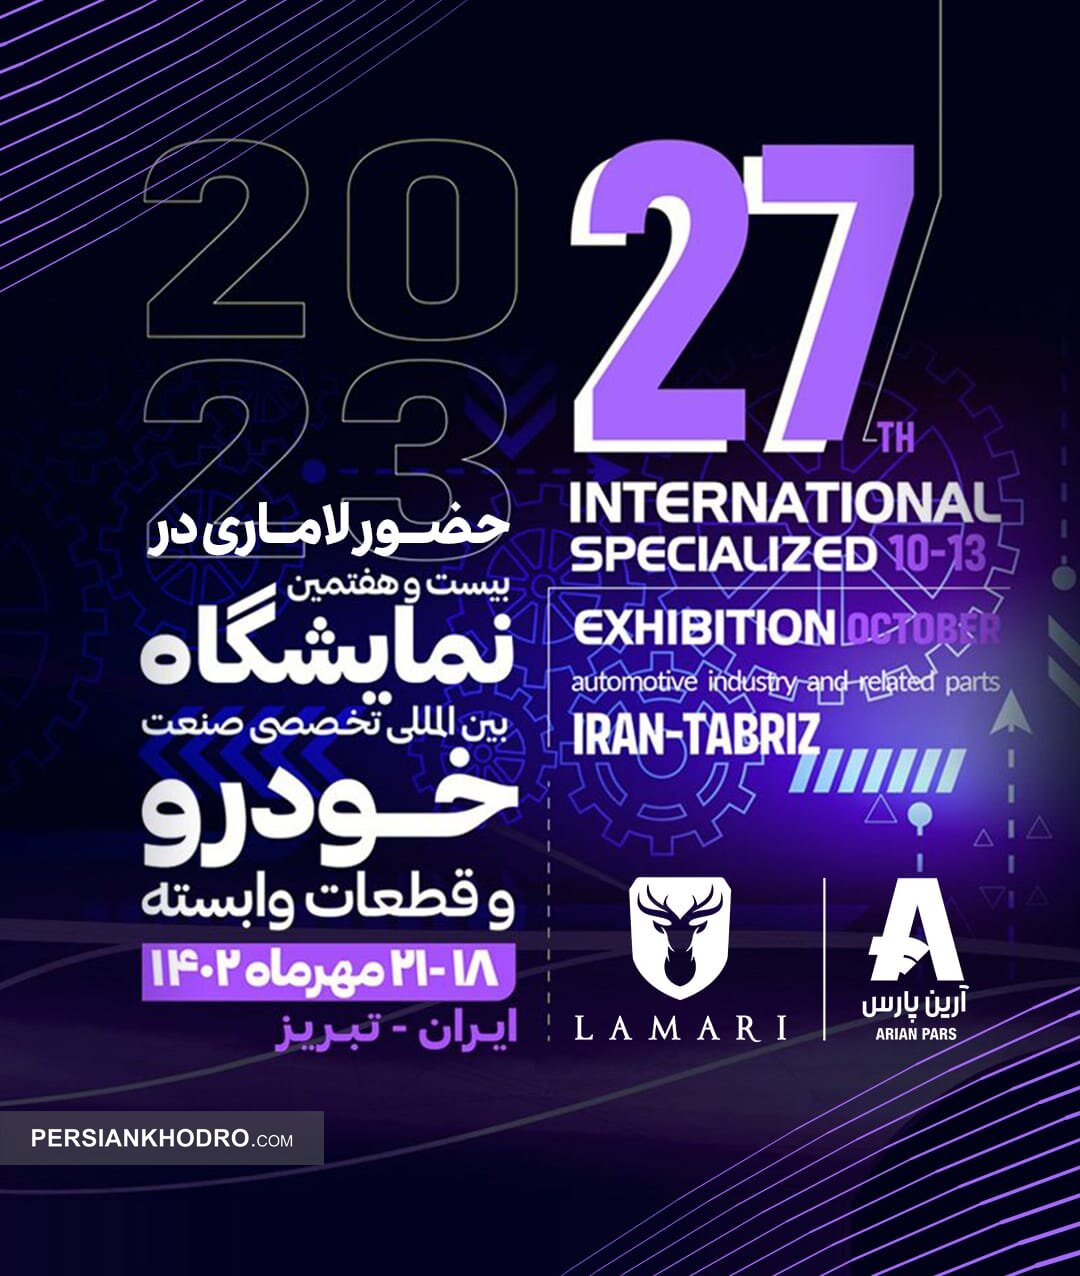 نمایش ۳ گانه لاماری در نمایشگاه خودرو تبریز